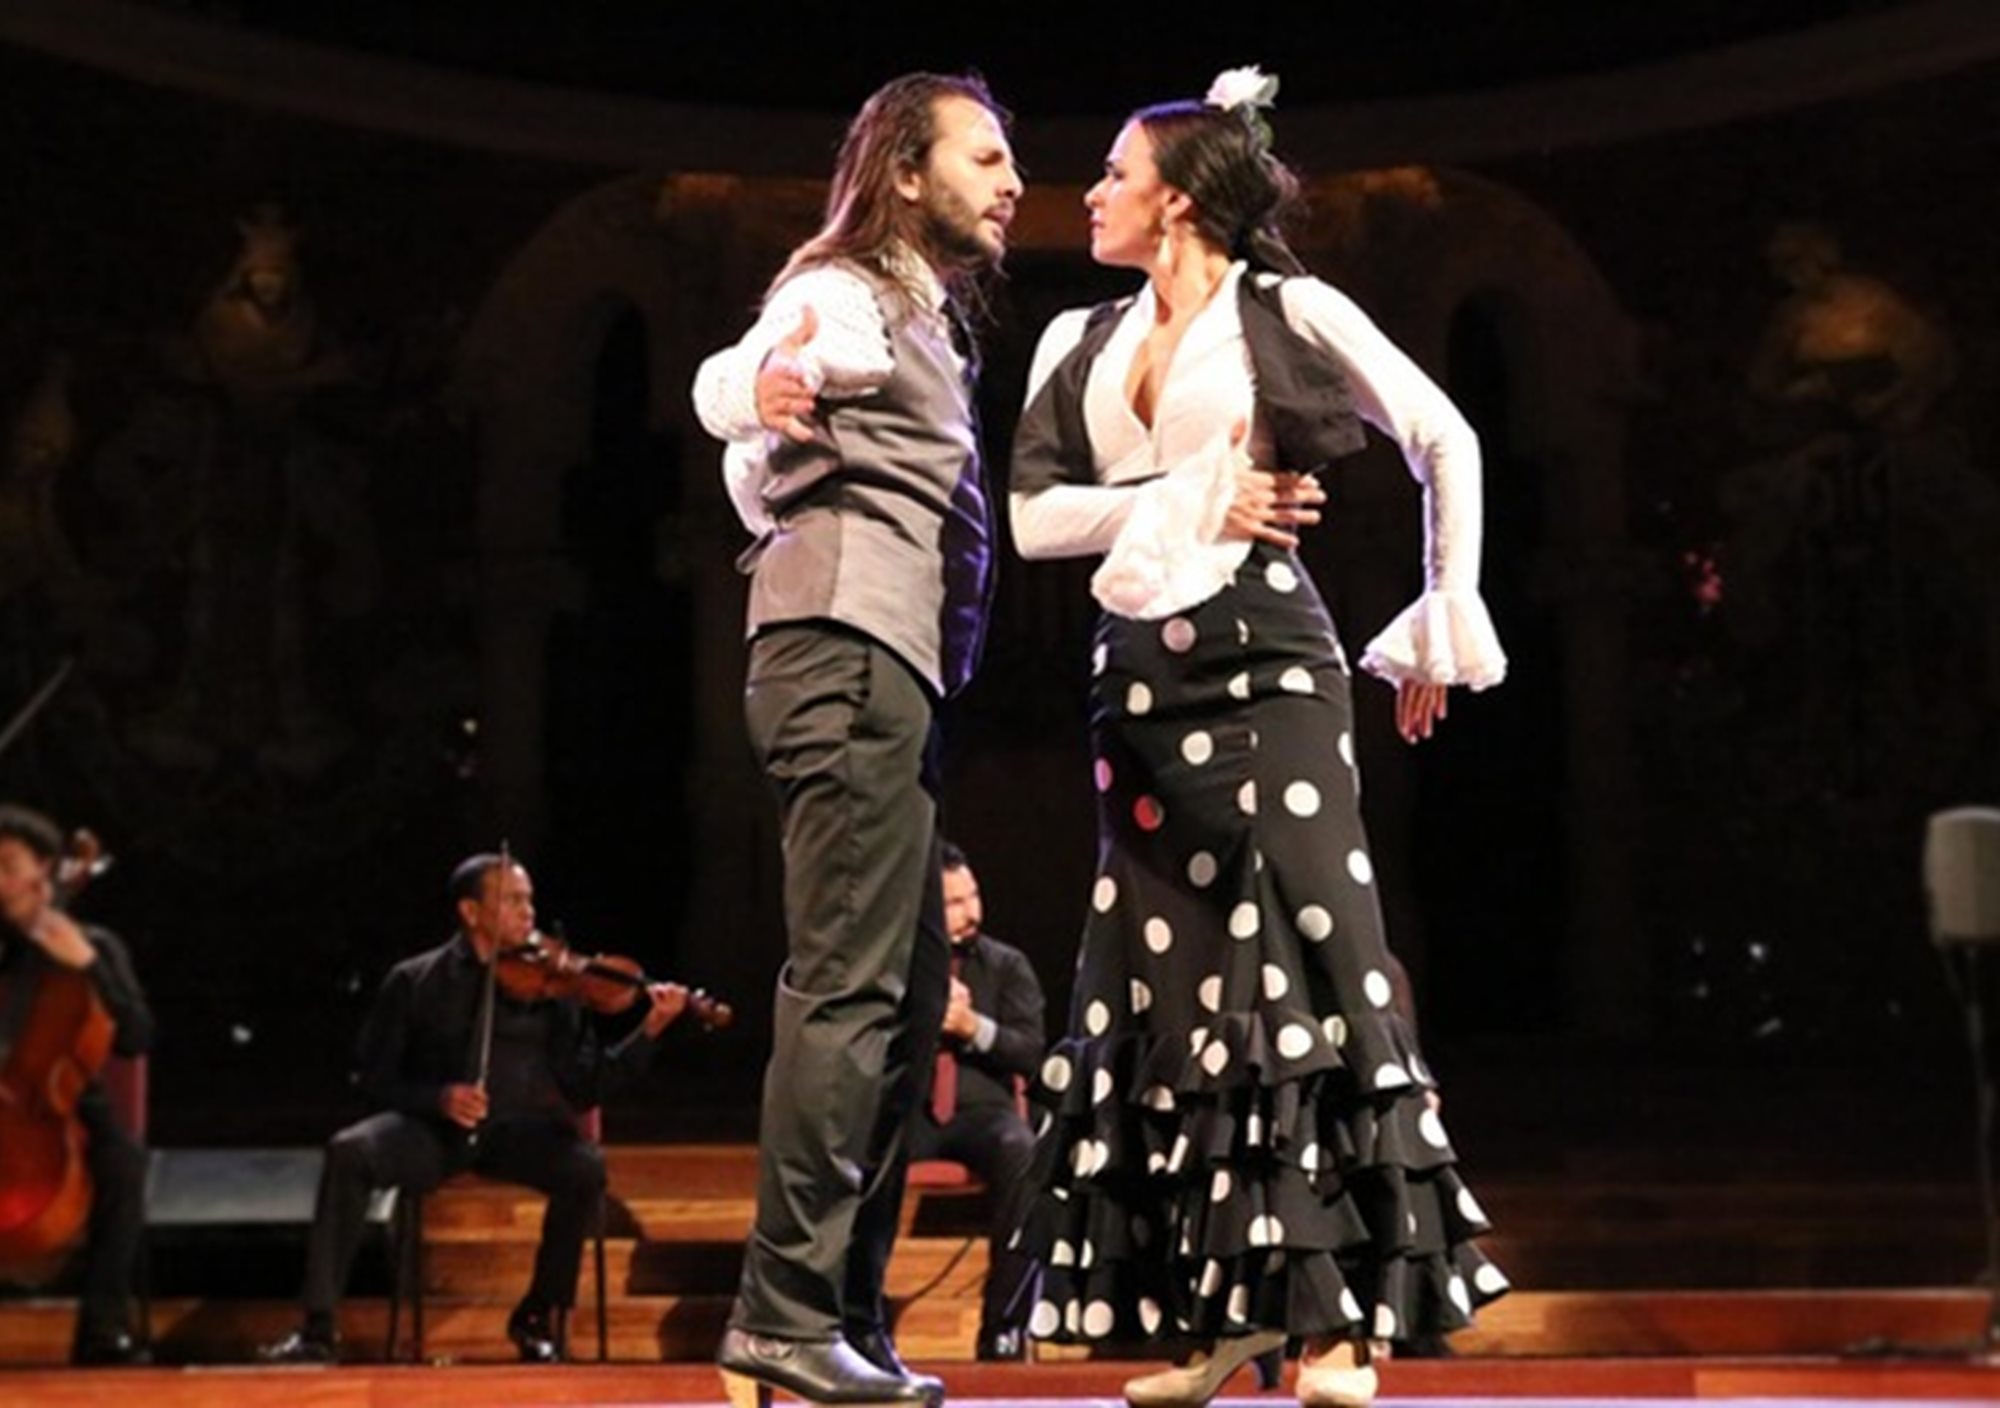 buchen online tickets karten eintrittskarten Fahrkarte Oper und Flamenco Show in Teatre Poliorama